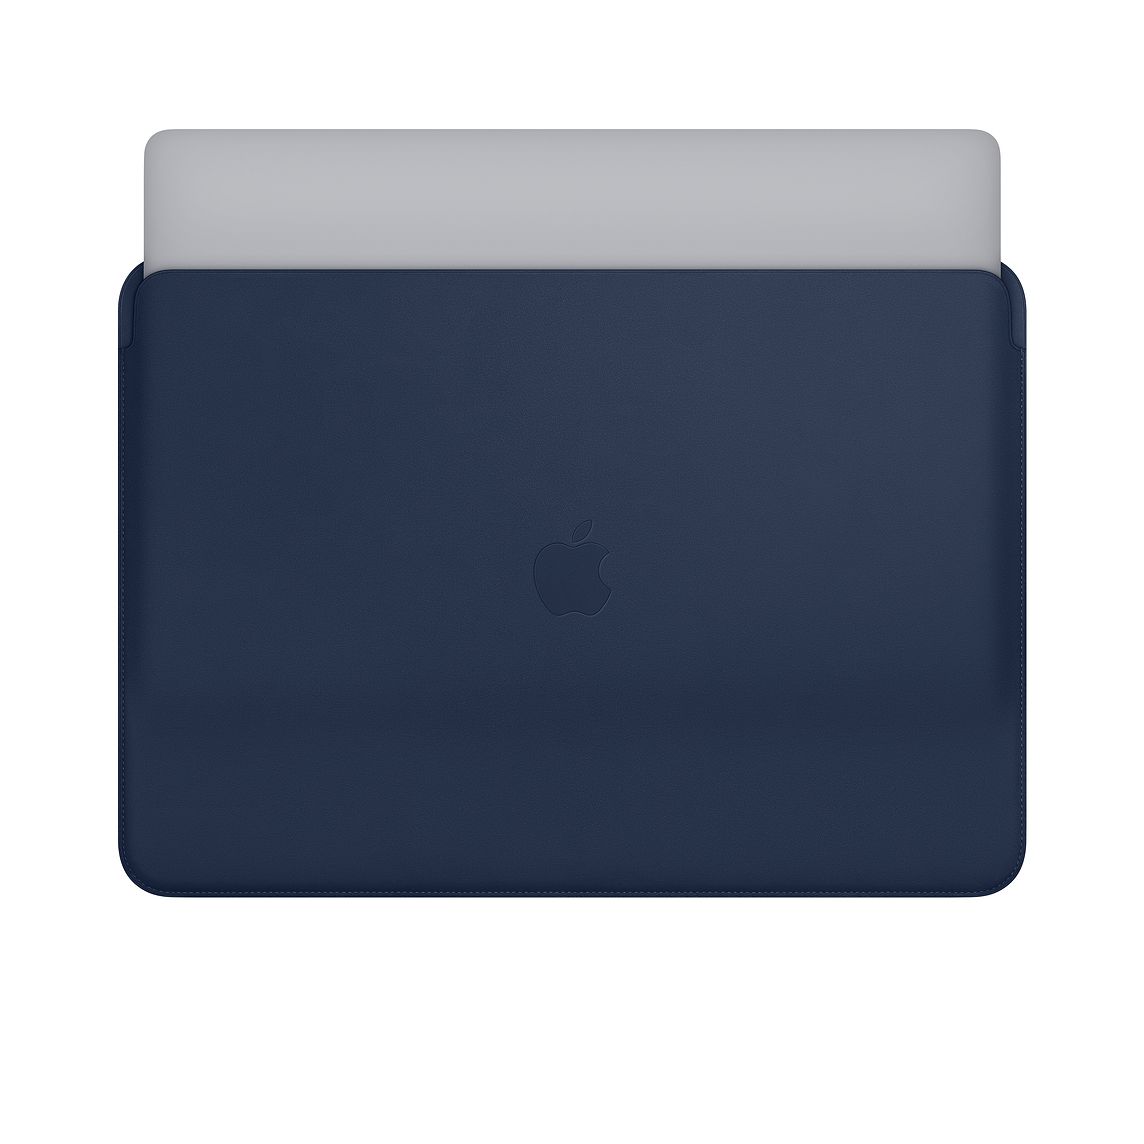 Apple、｢MacBook Pro 15インチ｣向けの純正レザースリーブを発売